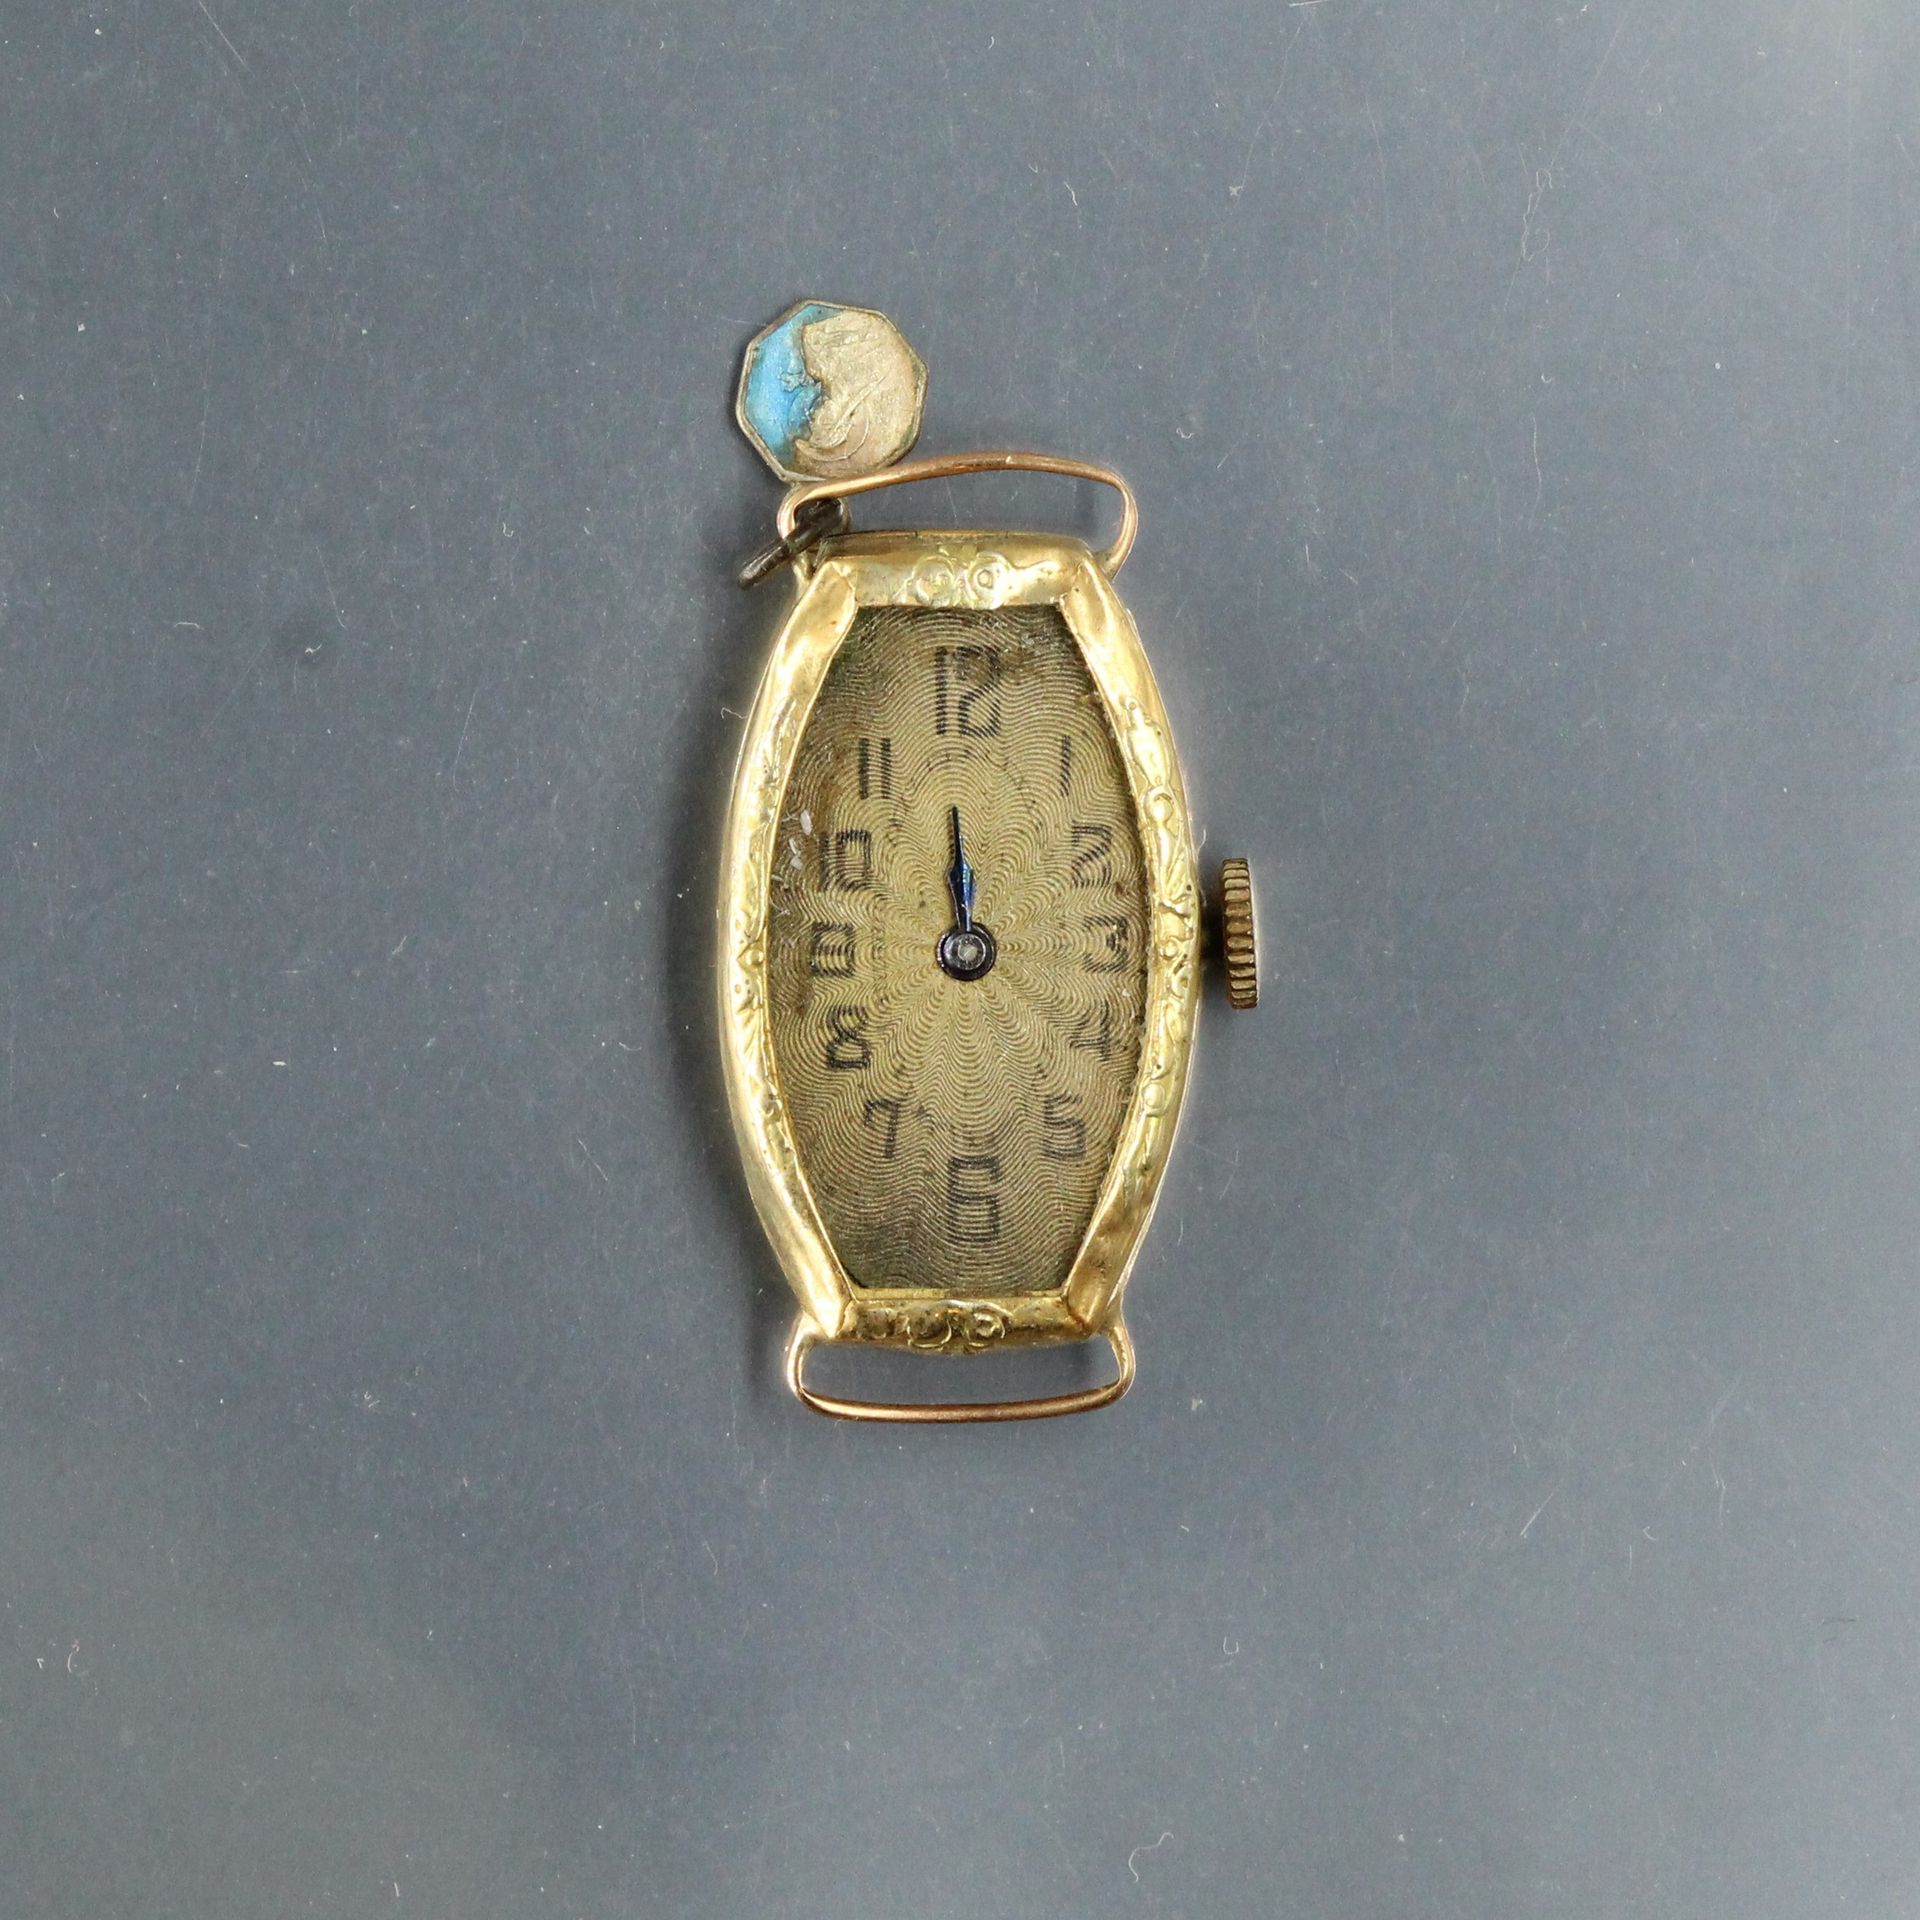 Null Scrap: an 18k (750) gold Art Deco style watch case.

Gross weight: 8.00 g.